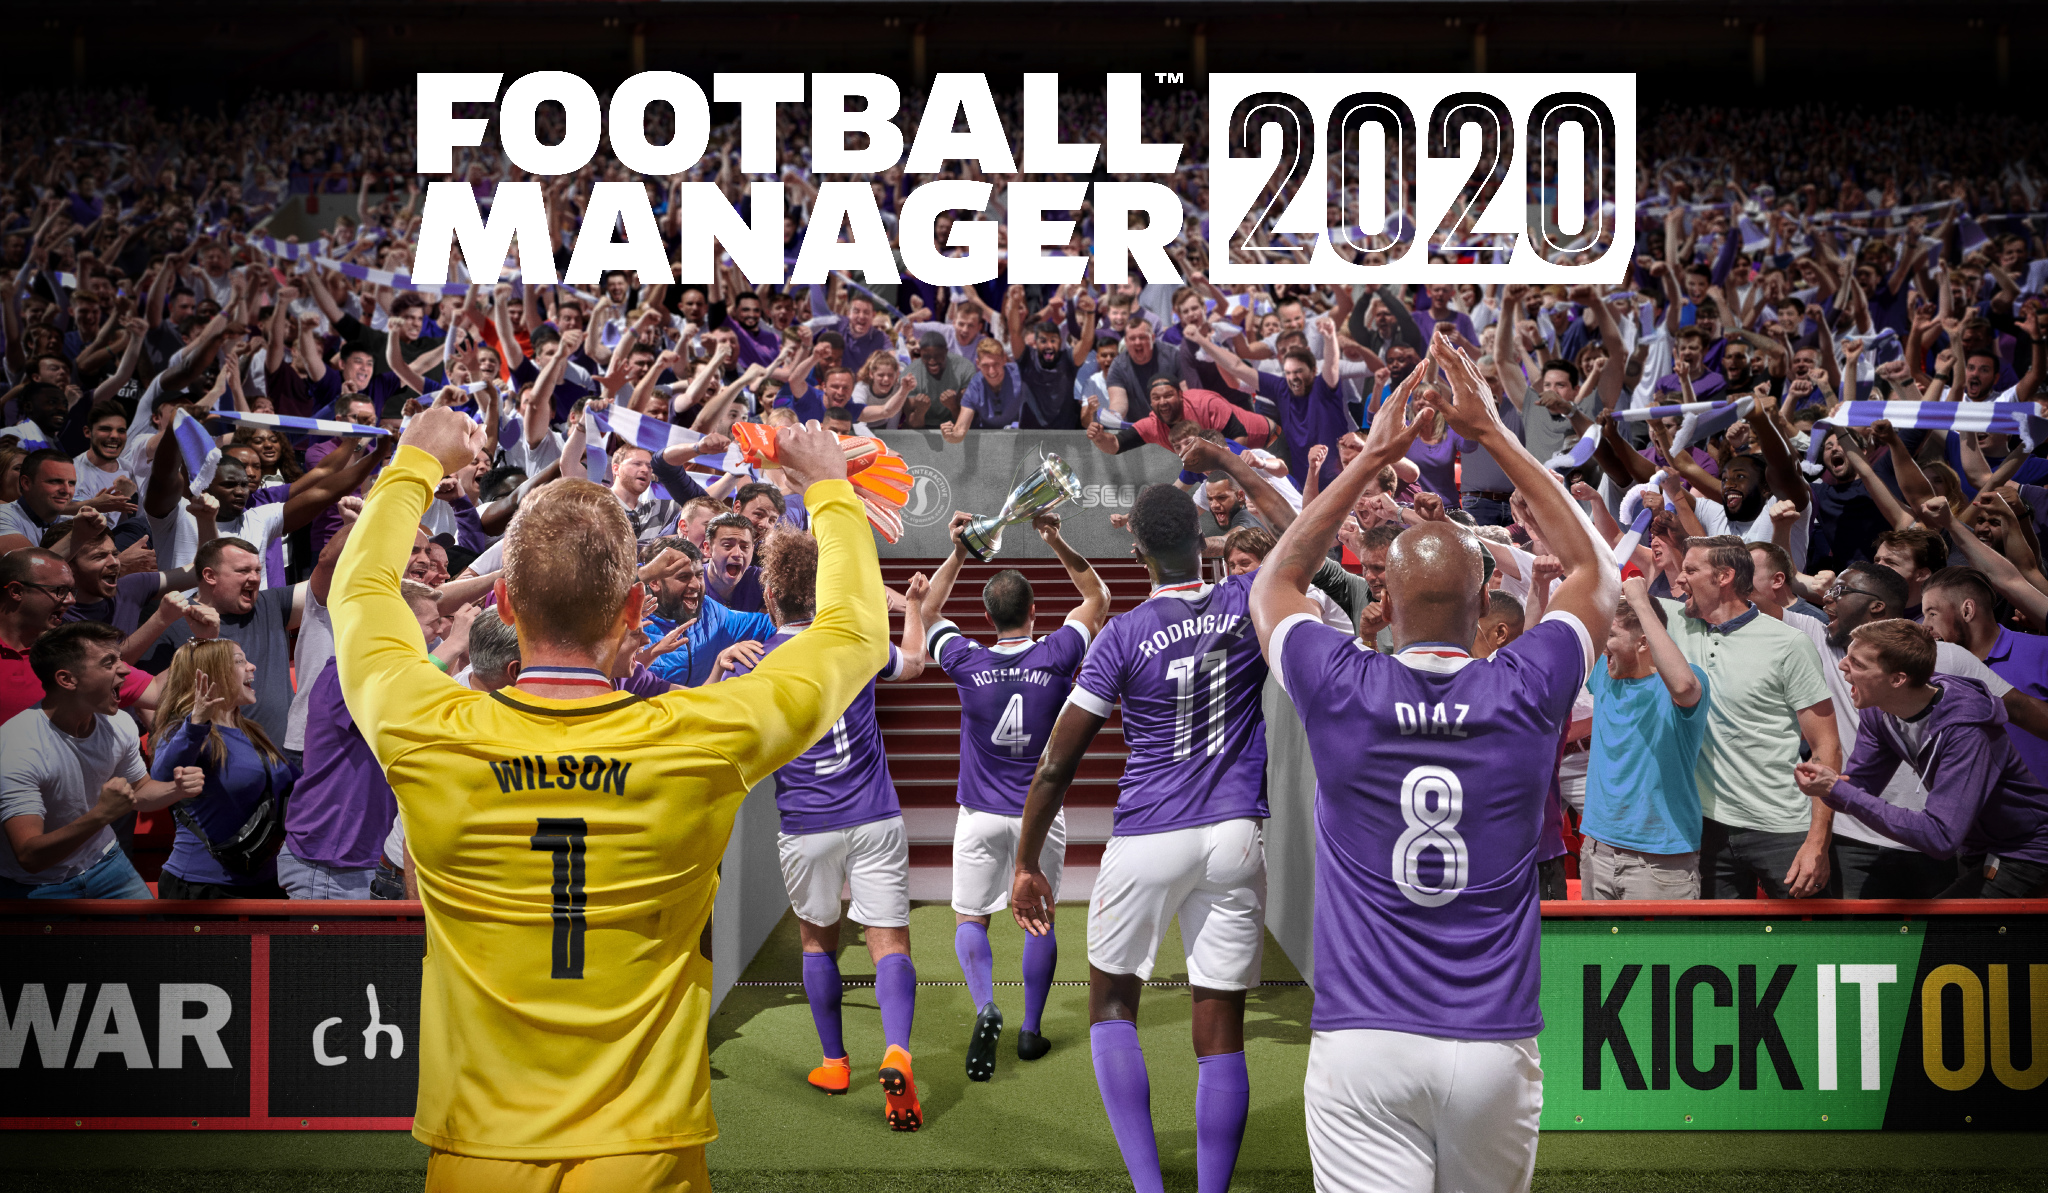 Football Manager 2020: Sport Interactive cerca soluzioni alternative all’imballaggio della plastica